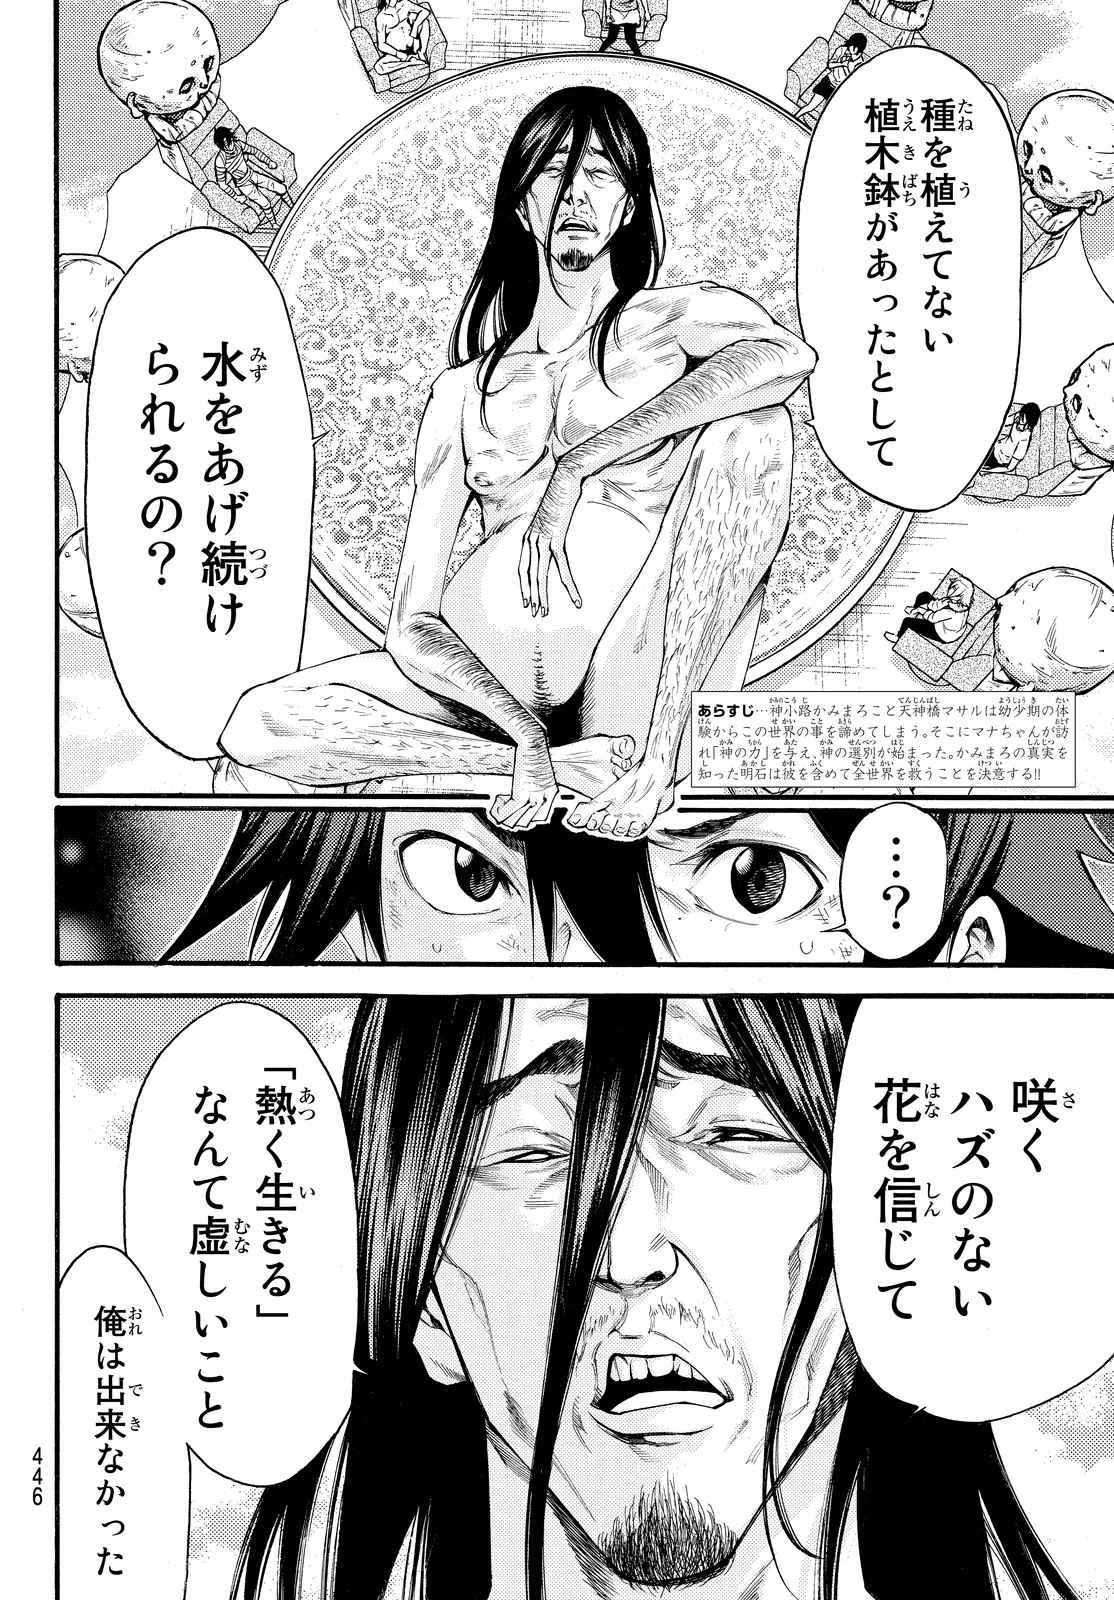 Kamisama no Ituori - Chapter 156 - Page 2